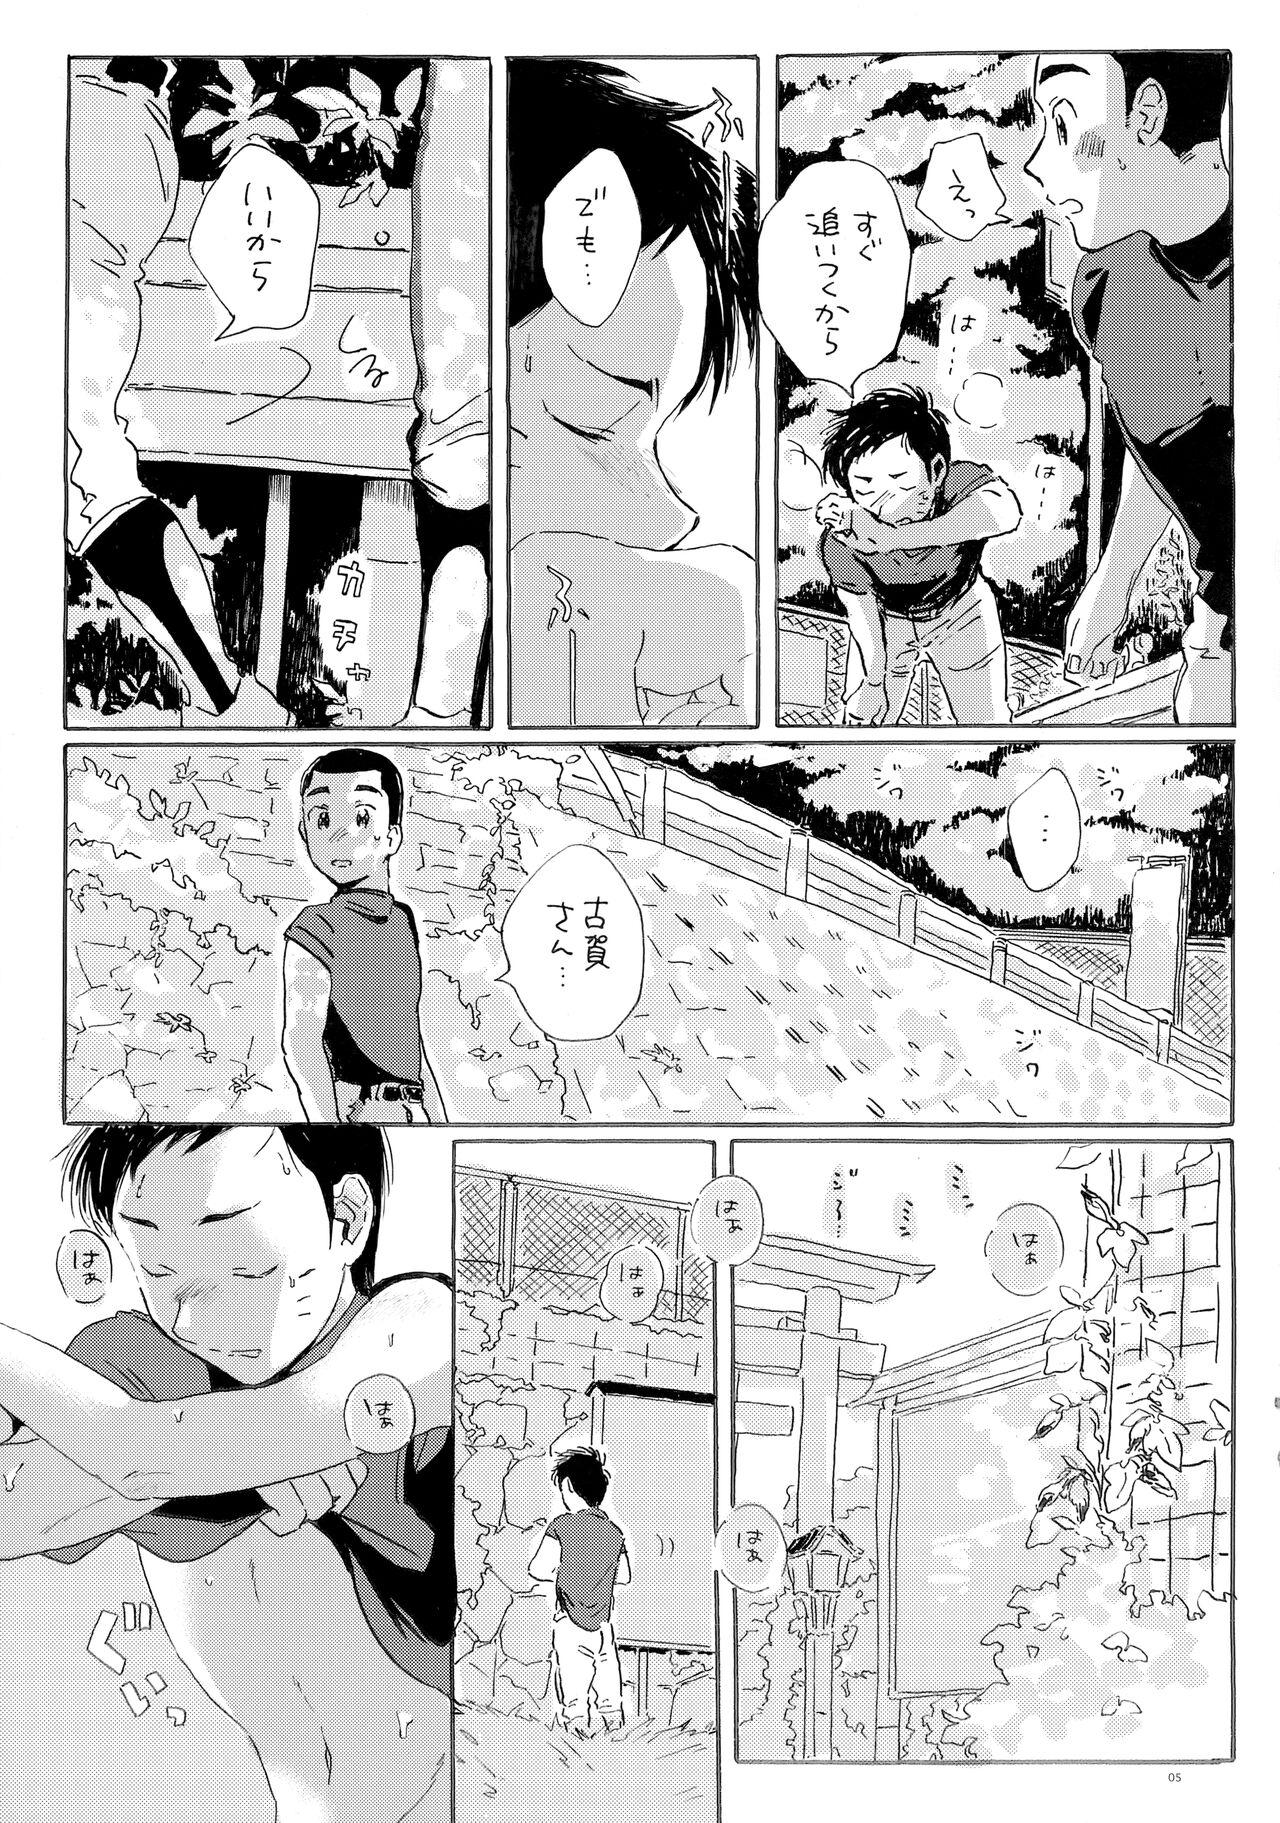 Pinoy Kono mama Enchoushite Ookurishimasu - Major Monstercock - Page 4